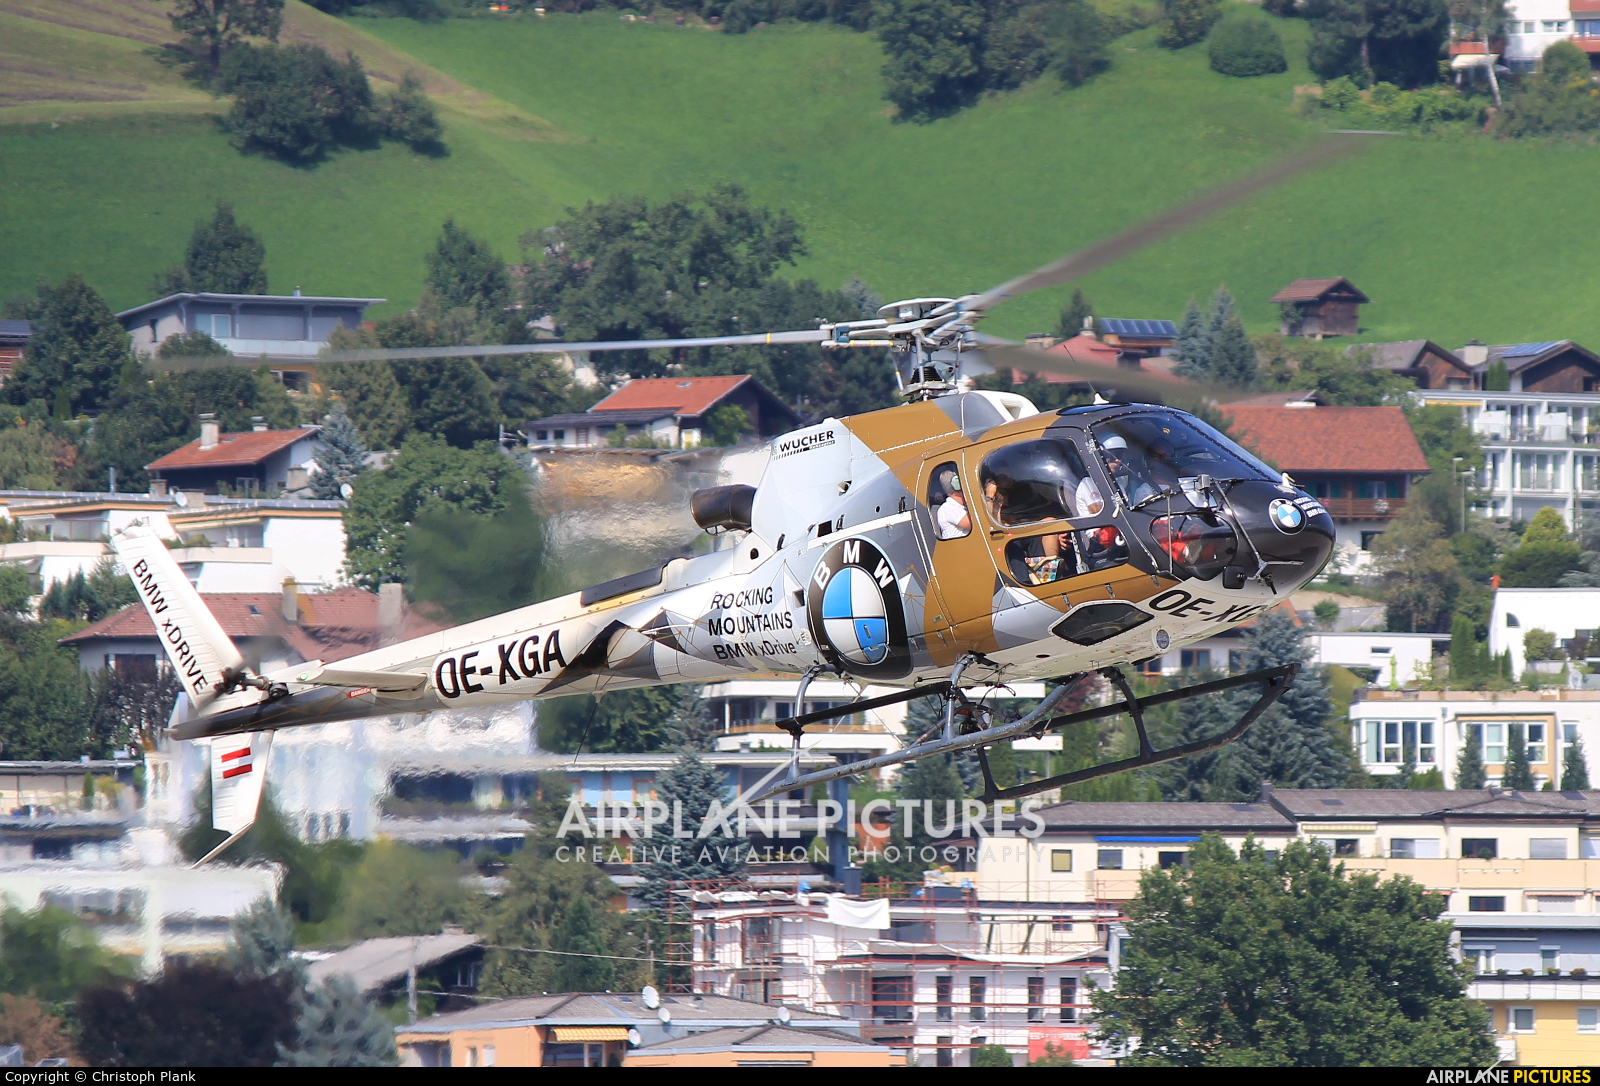 Wucher Helicopter OE-XGA aircraft at Innsbruck